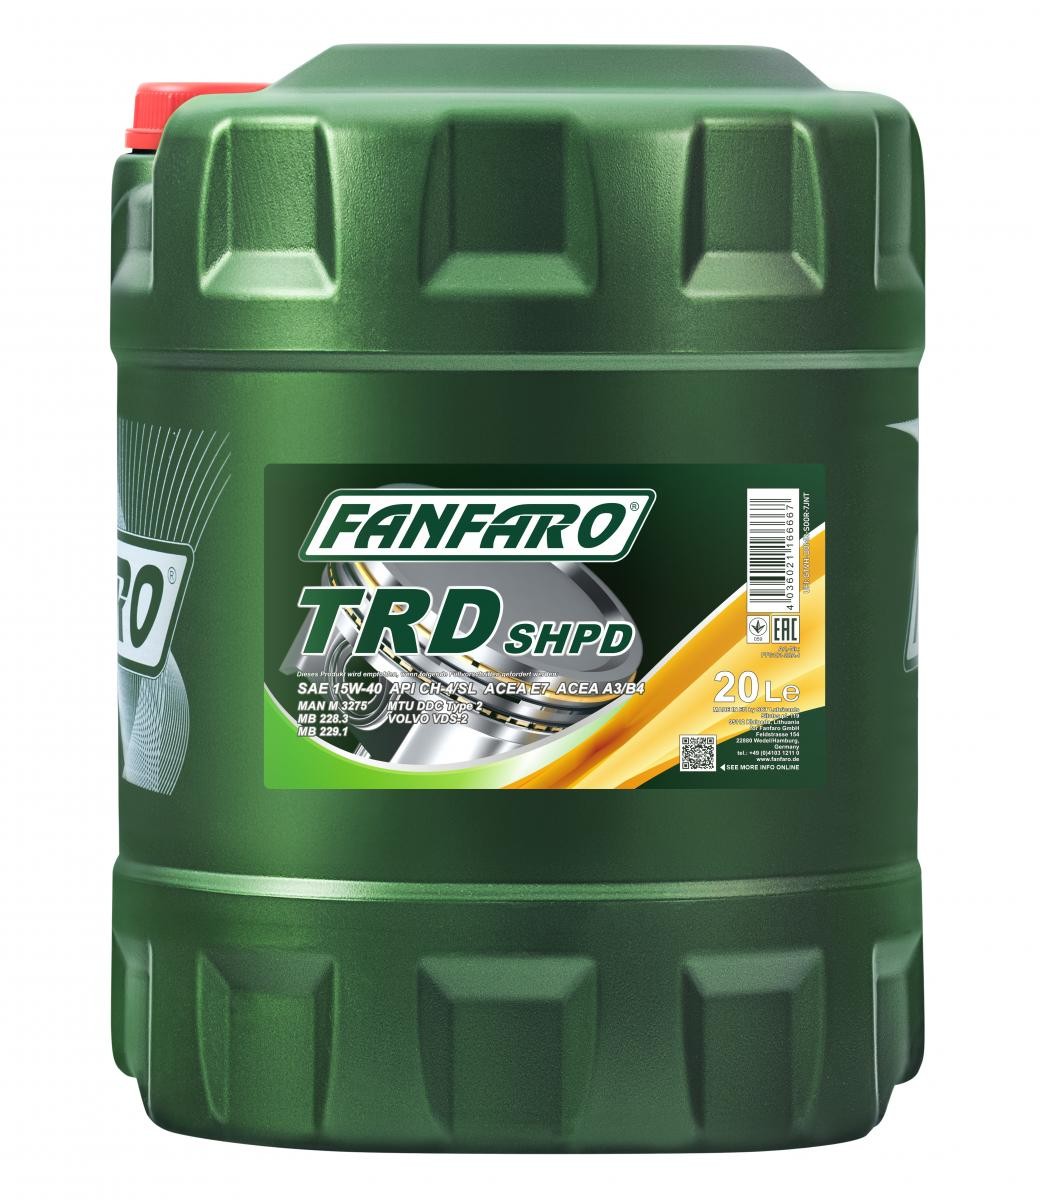 Comprare FF6101-20 FANFARO SHPD, TRD 15W-40, 20l, Olio minerale Olio motore FF6101-20 poco costoso